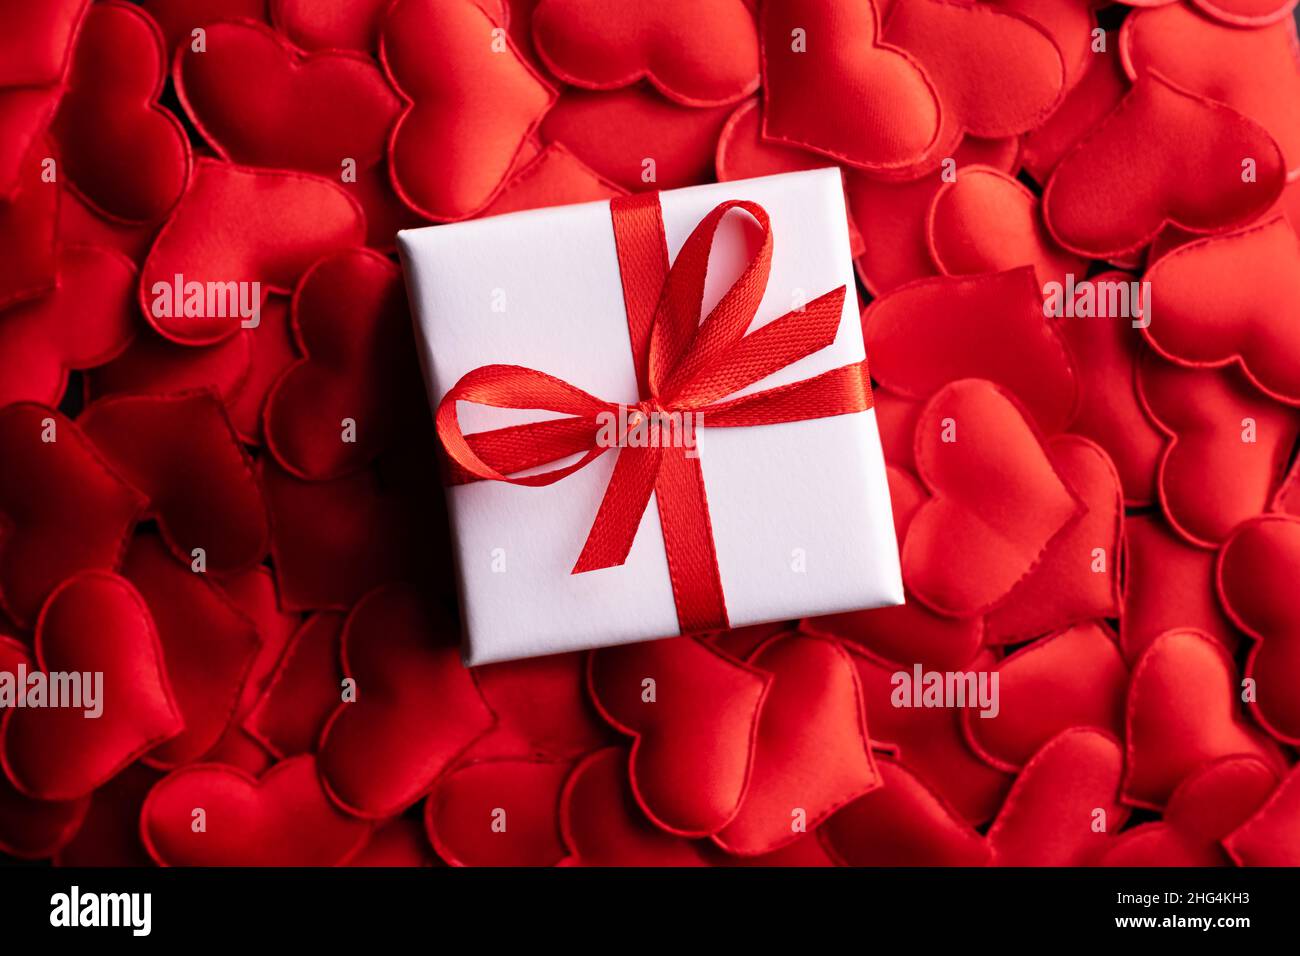 Kreatives Postkarten-Design am Valentinstag mit weißer Geschenkbox mit Schleife auf rotem Textilherzen-Hintergrund. Valentinstag und Liebeskonzept Stockfoto